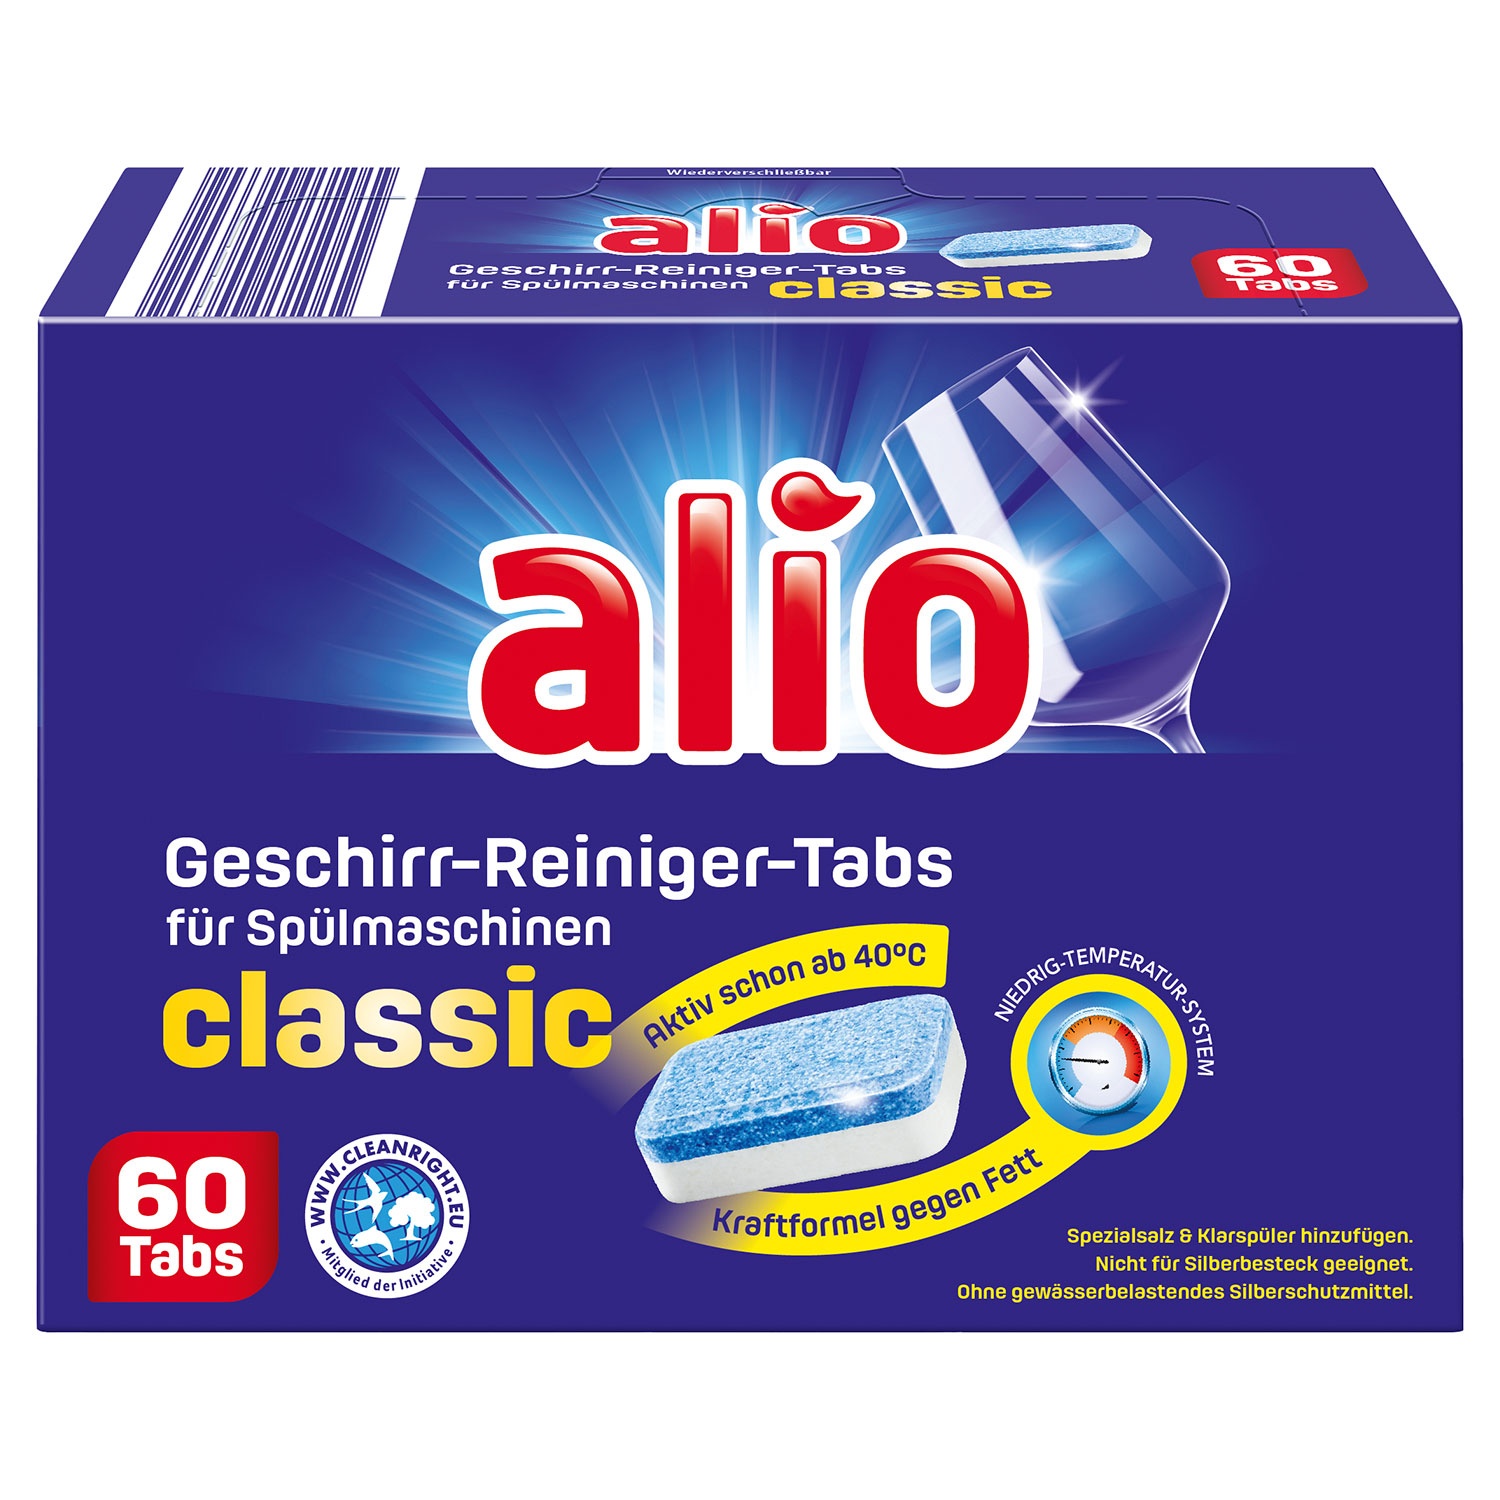 ALIO Geschirr-Reiniger-Tabs classic 60 Stk.